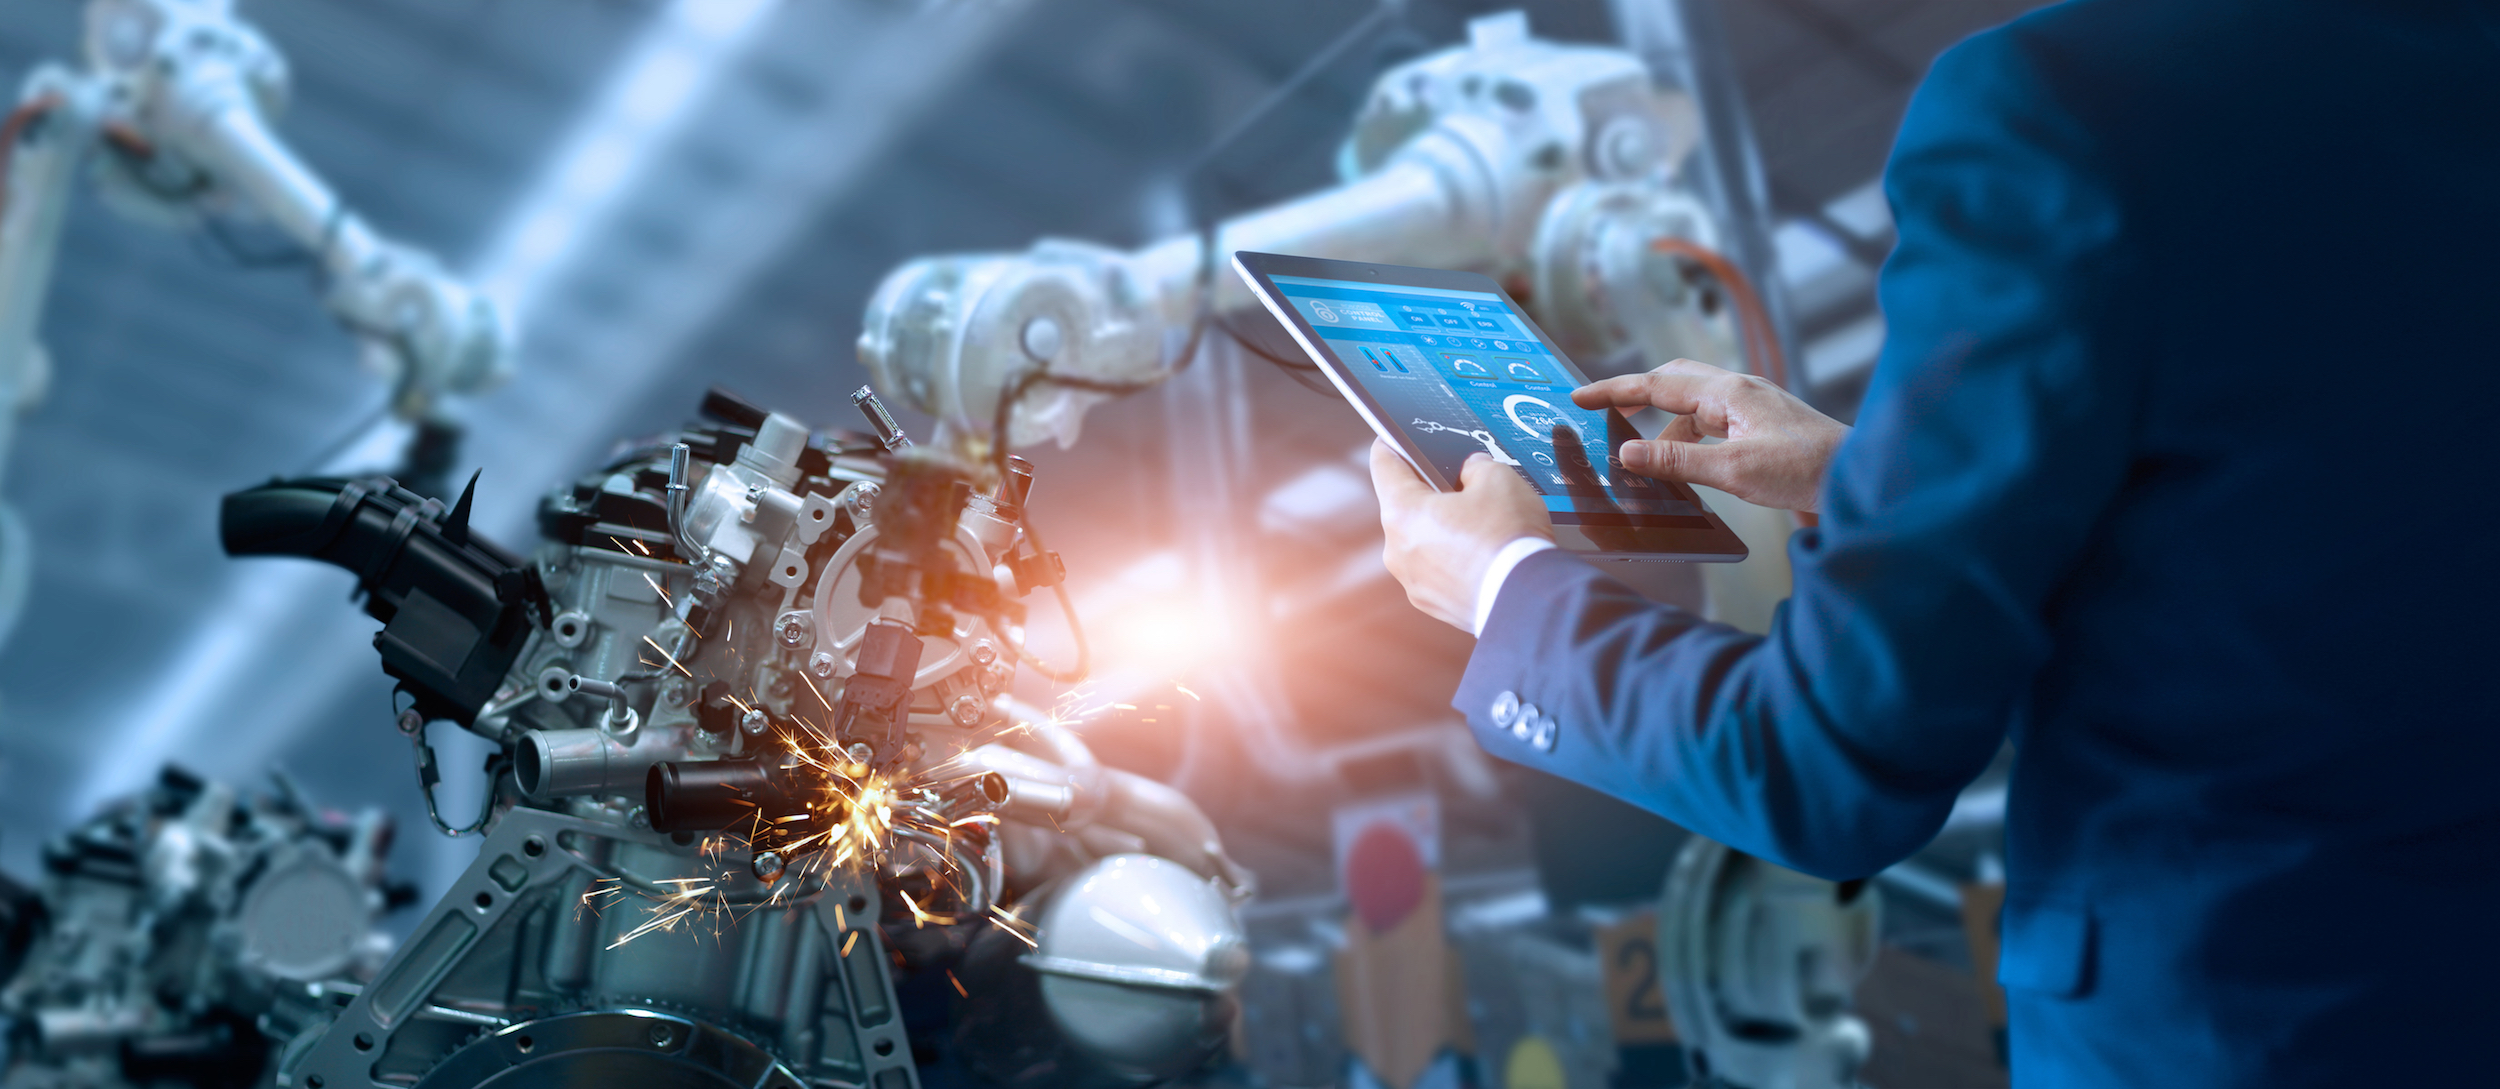 Przemysł musi odejść od upatrywania w automatyzacji alternatywy dla człowieka (fot. Shutterstock)